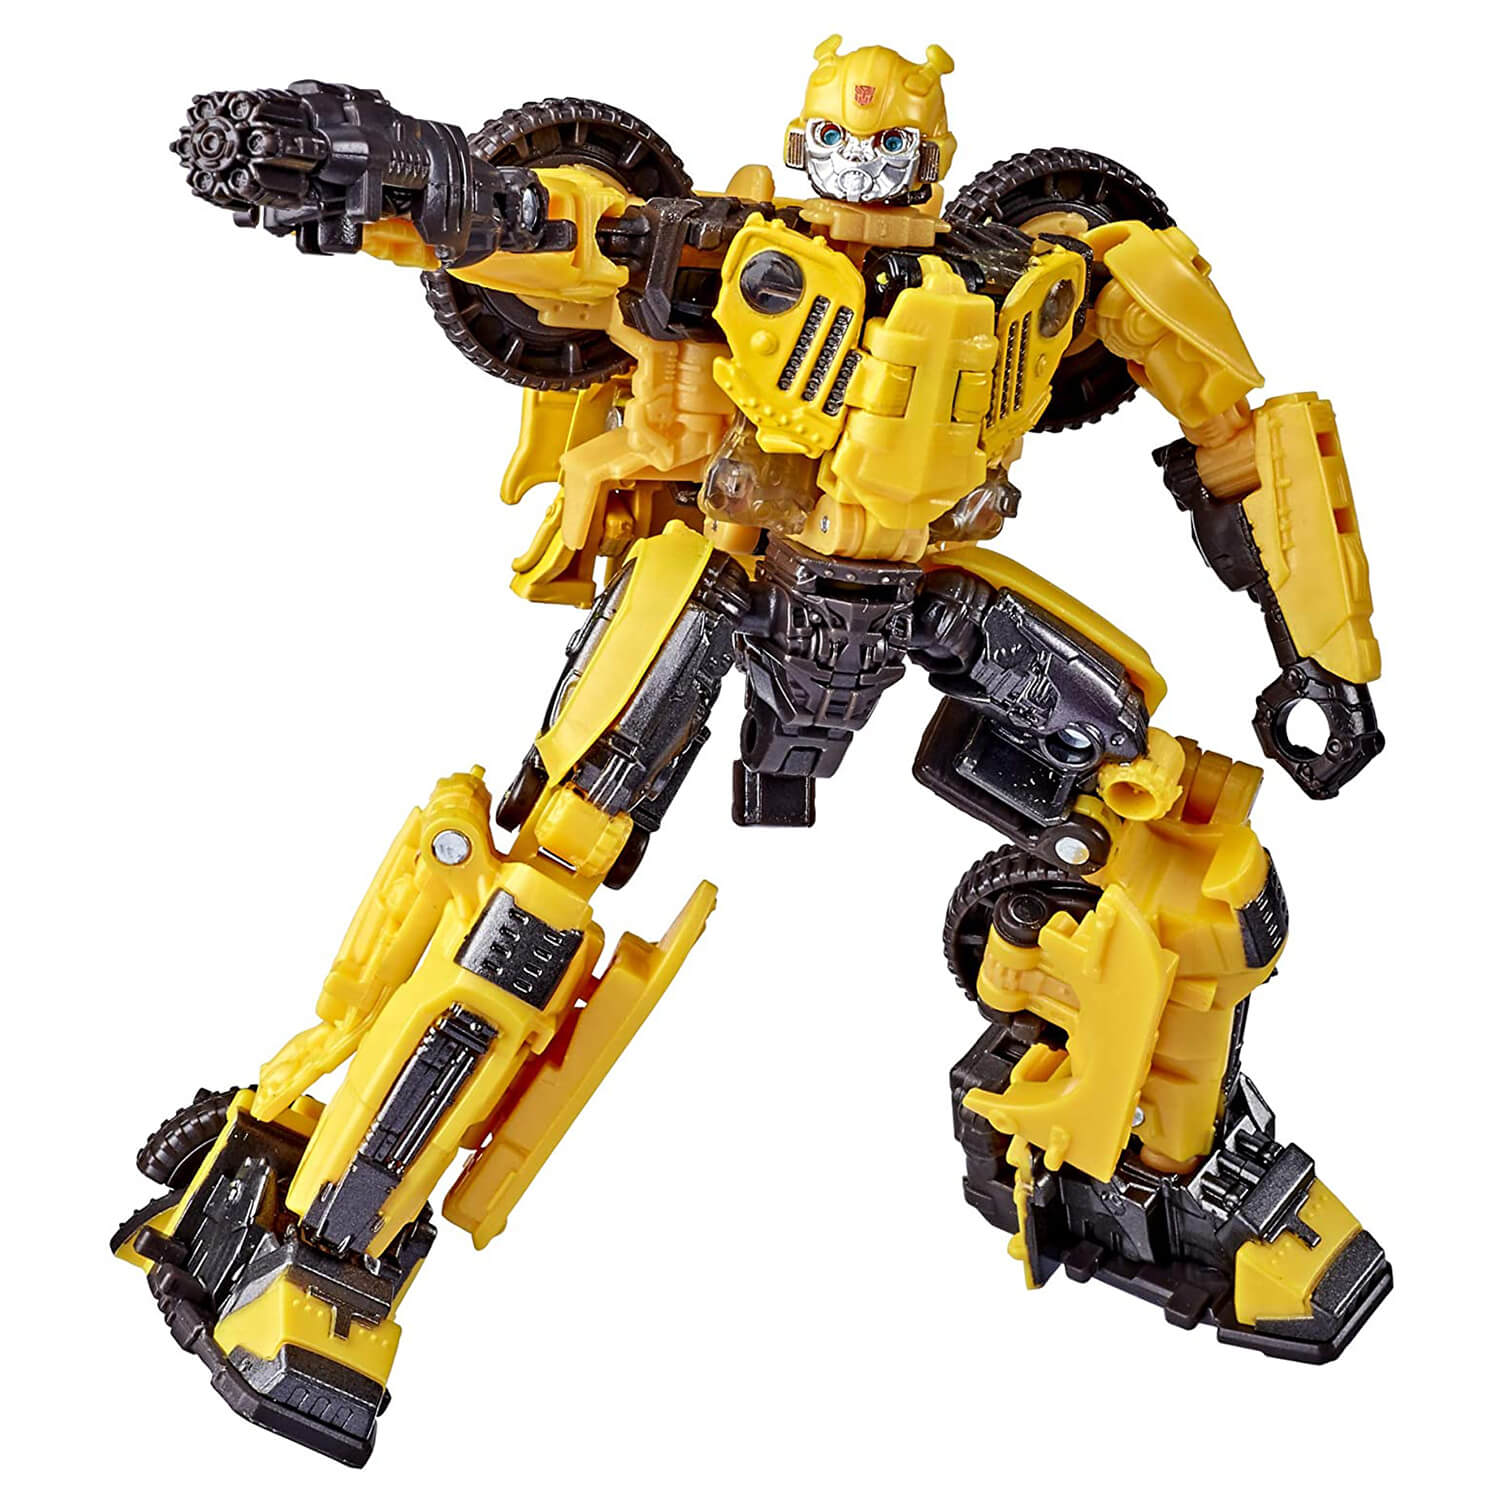 Transformers Studio Series Deluxe Class Offroad Bumblebee #57